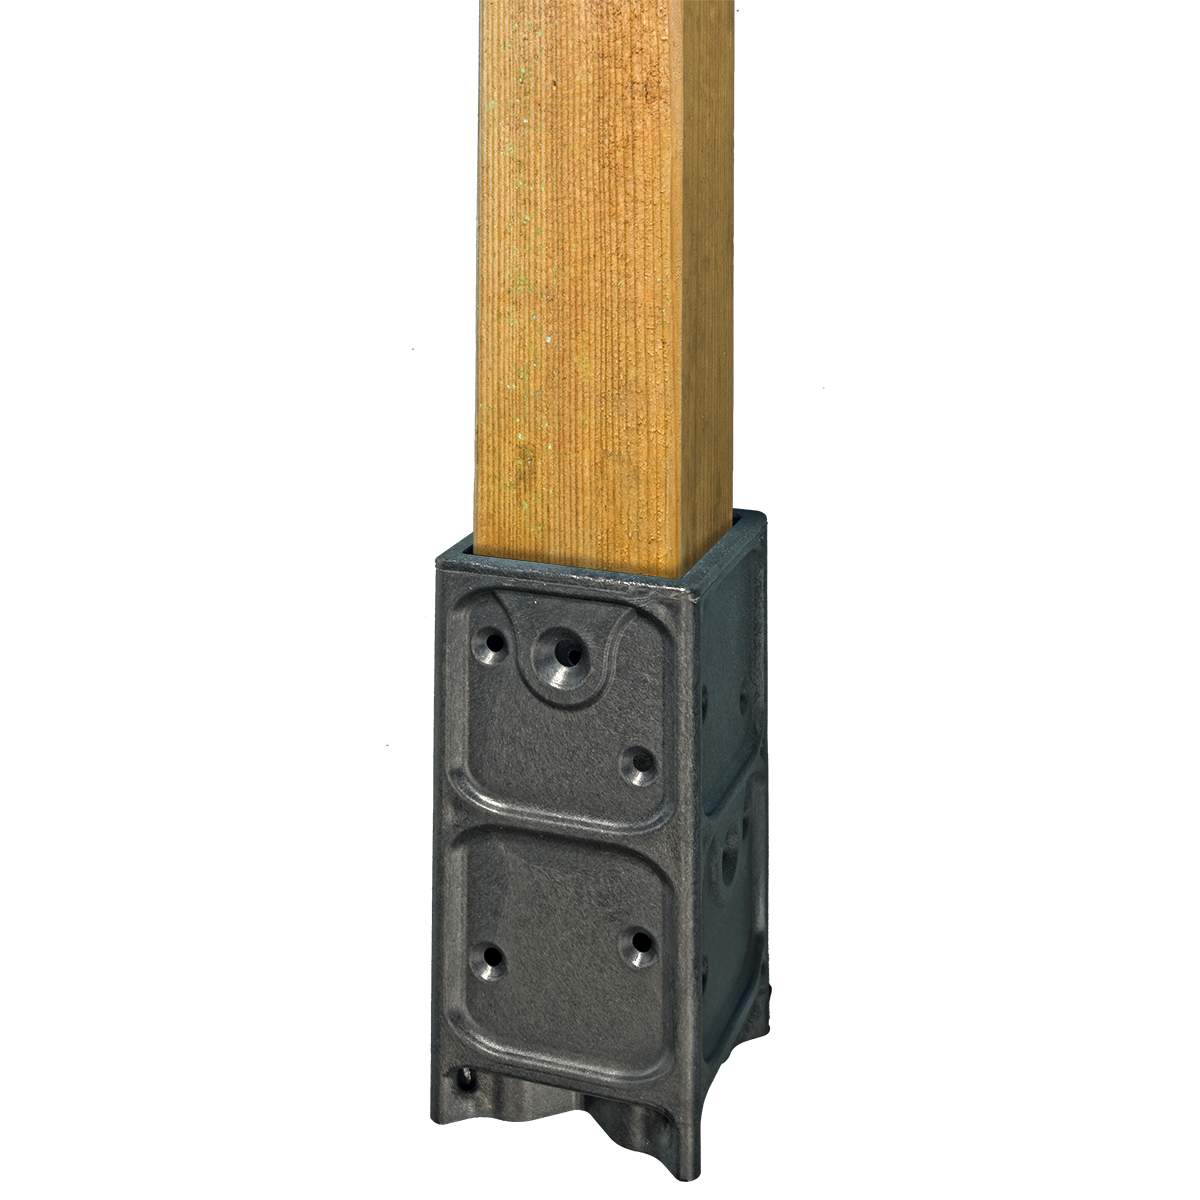 10 Stk. Aufschraubhülse für Holzpfosten 7x7cm Pfostenträger